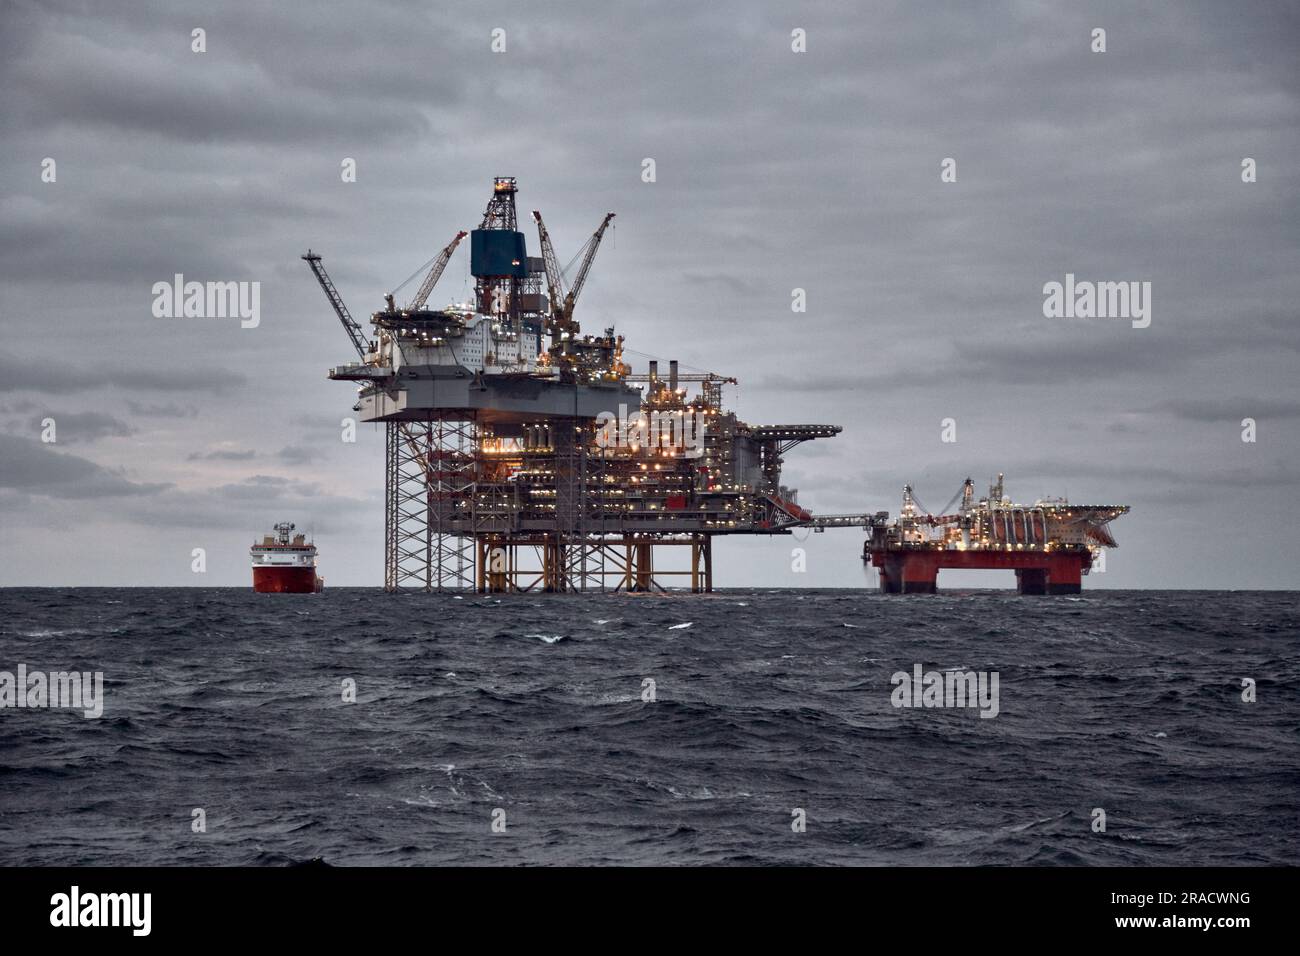 Image de la production de pétrole et de gaz offshore dans la mer par temps orageux au crépuscule. Jack up, semi submersible plates-formes de production de pétrole brut dans l'océan. Banque D'Images